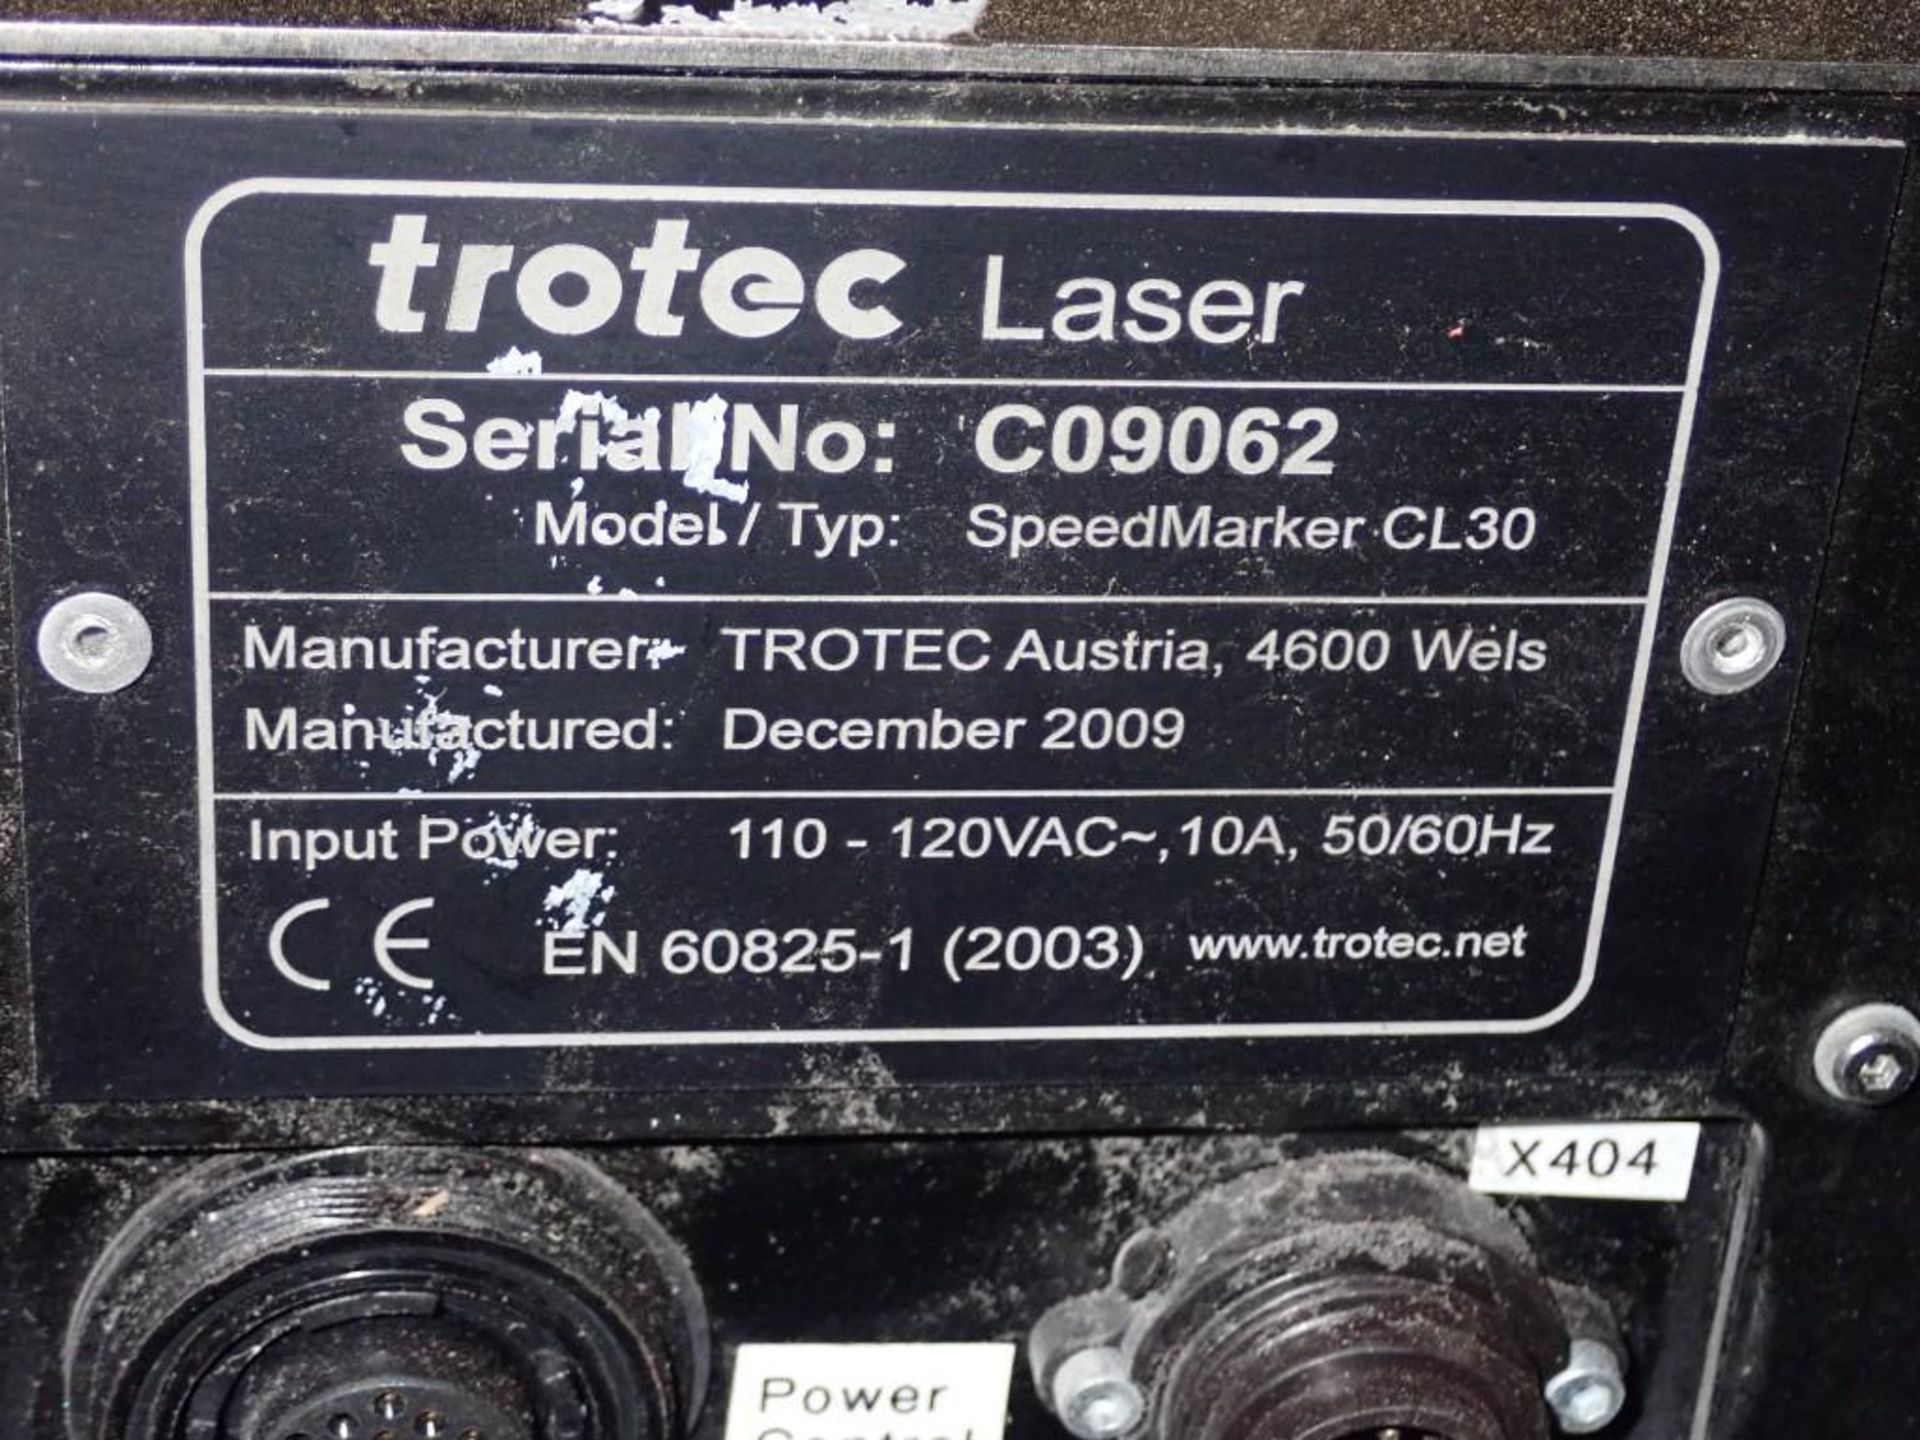 Trotec #Speedmarker CL30 Laser - Image 6 of 6